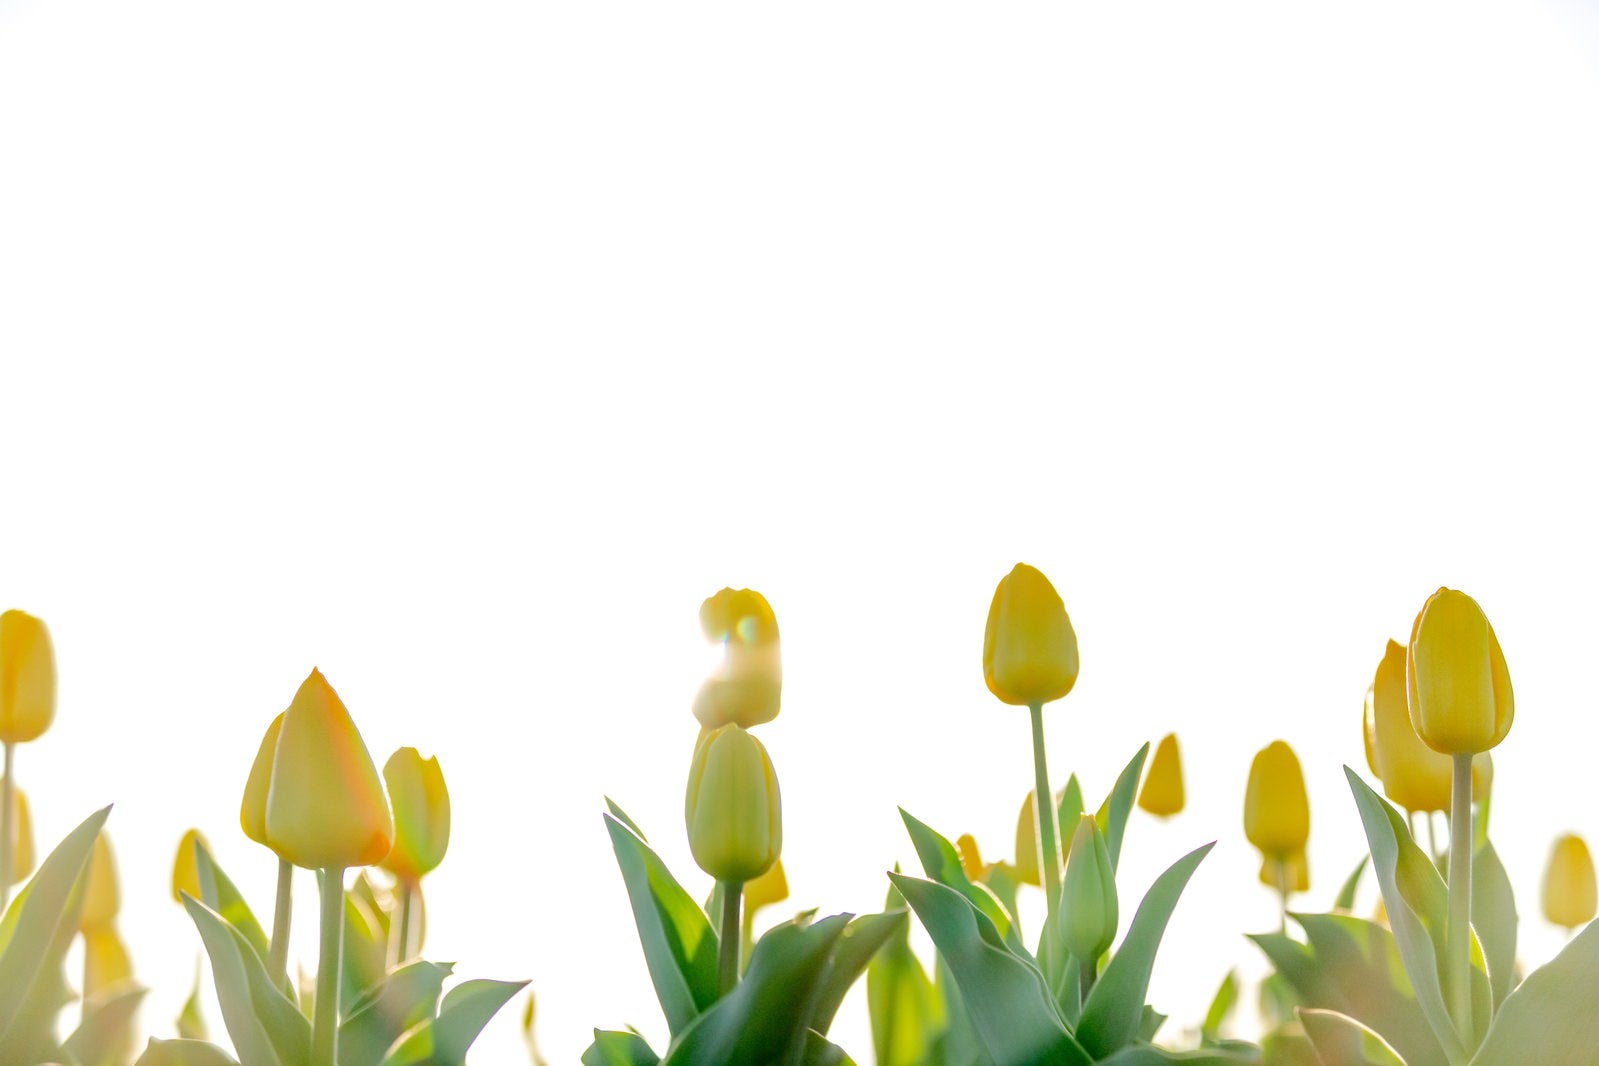 「開花ギリギリの黄色いチューリップ」の写真